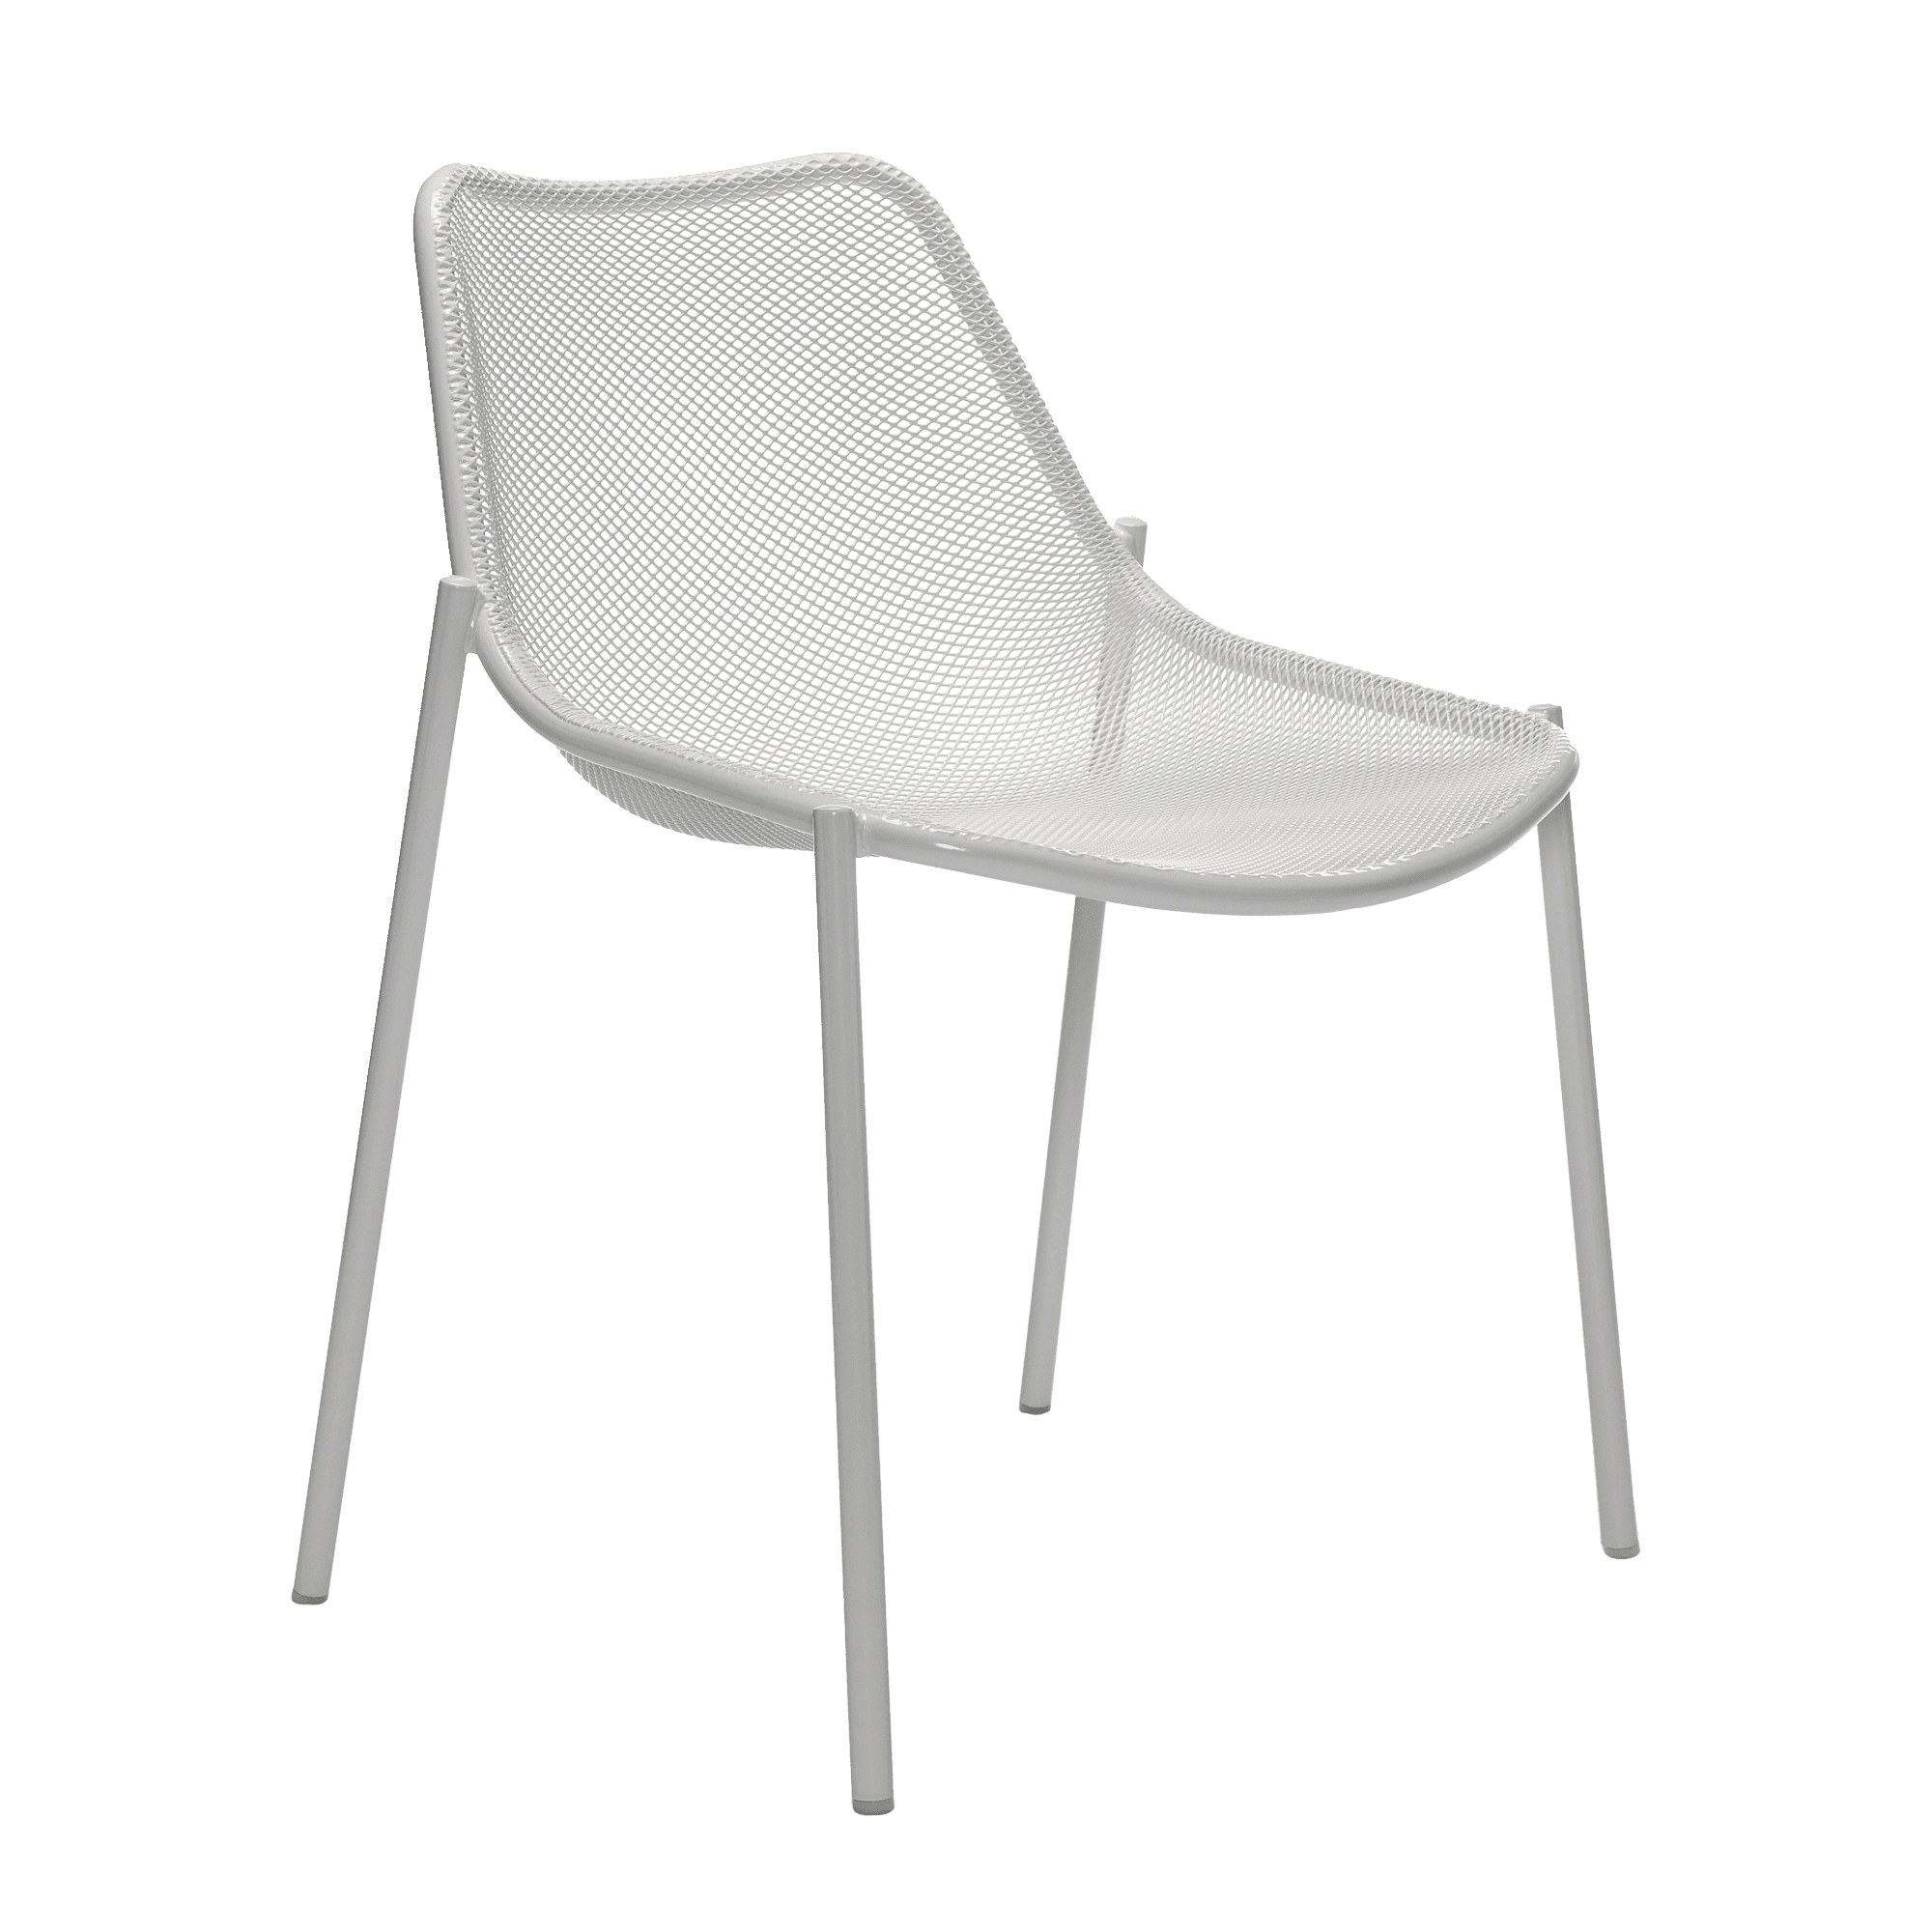 Openlijk ongeduldig zuurgraad EMU Round Outdoor Chair 4-Pack | Steelcase Store